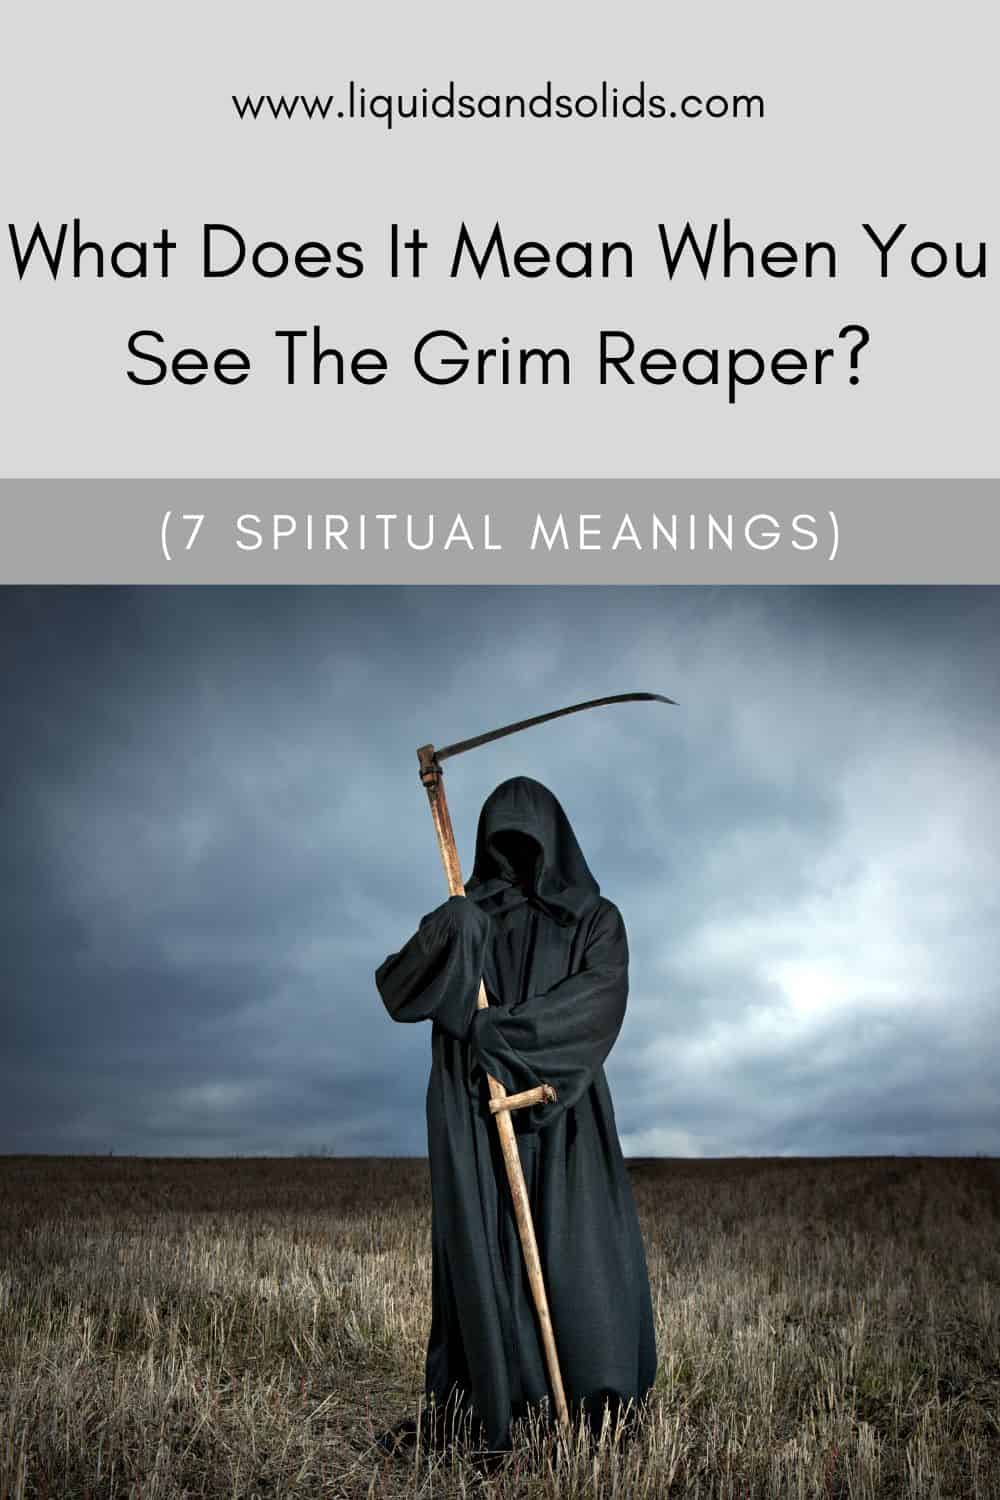 Grim Reaper Symbolism